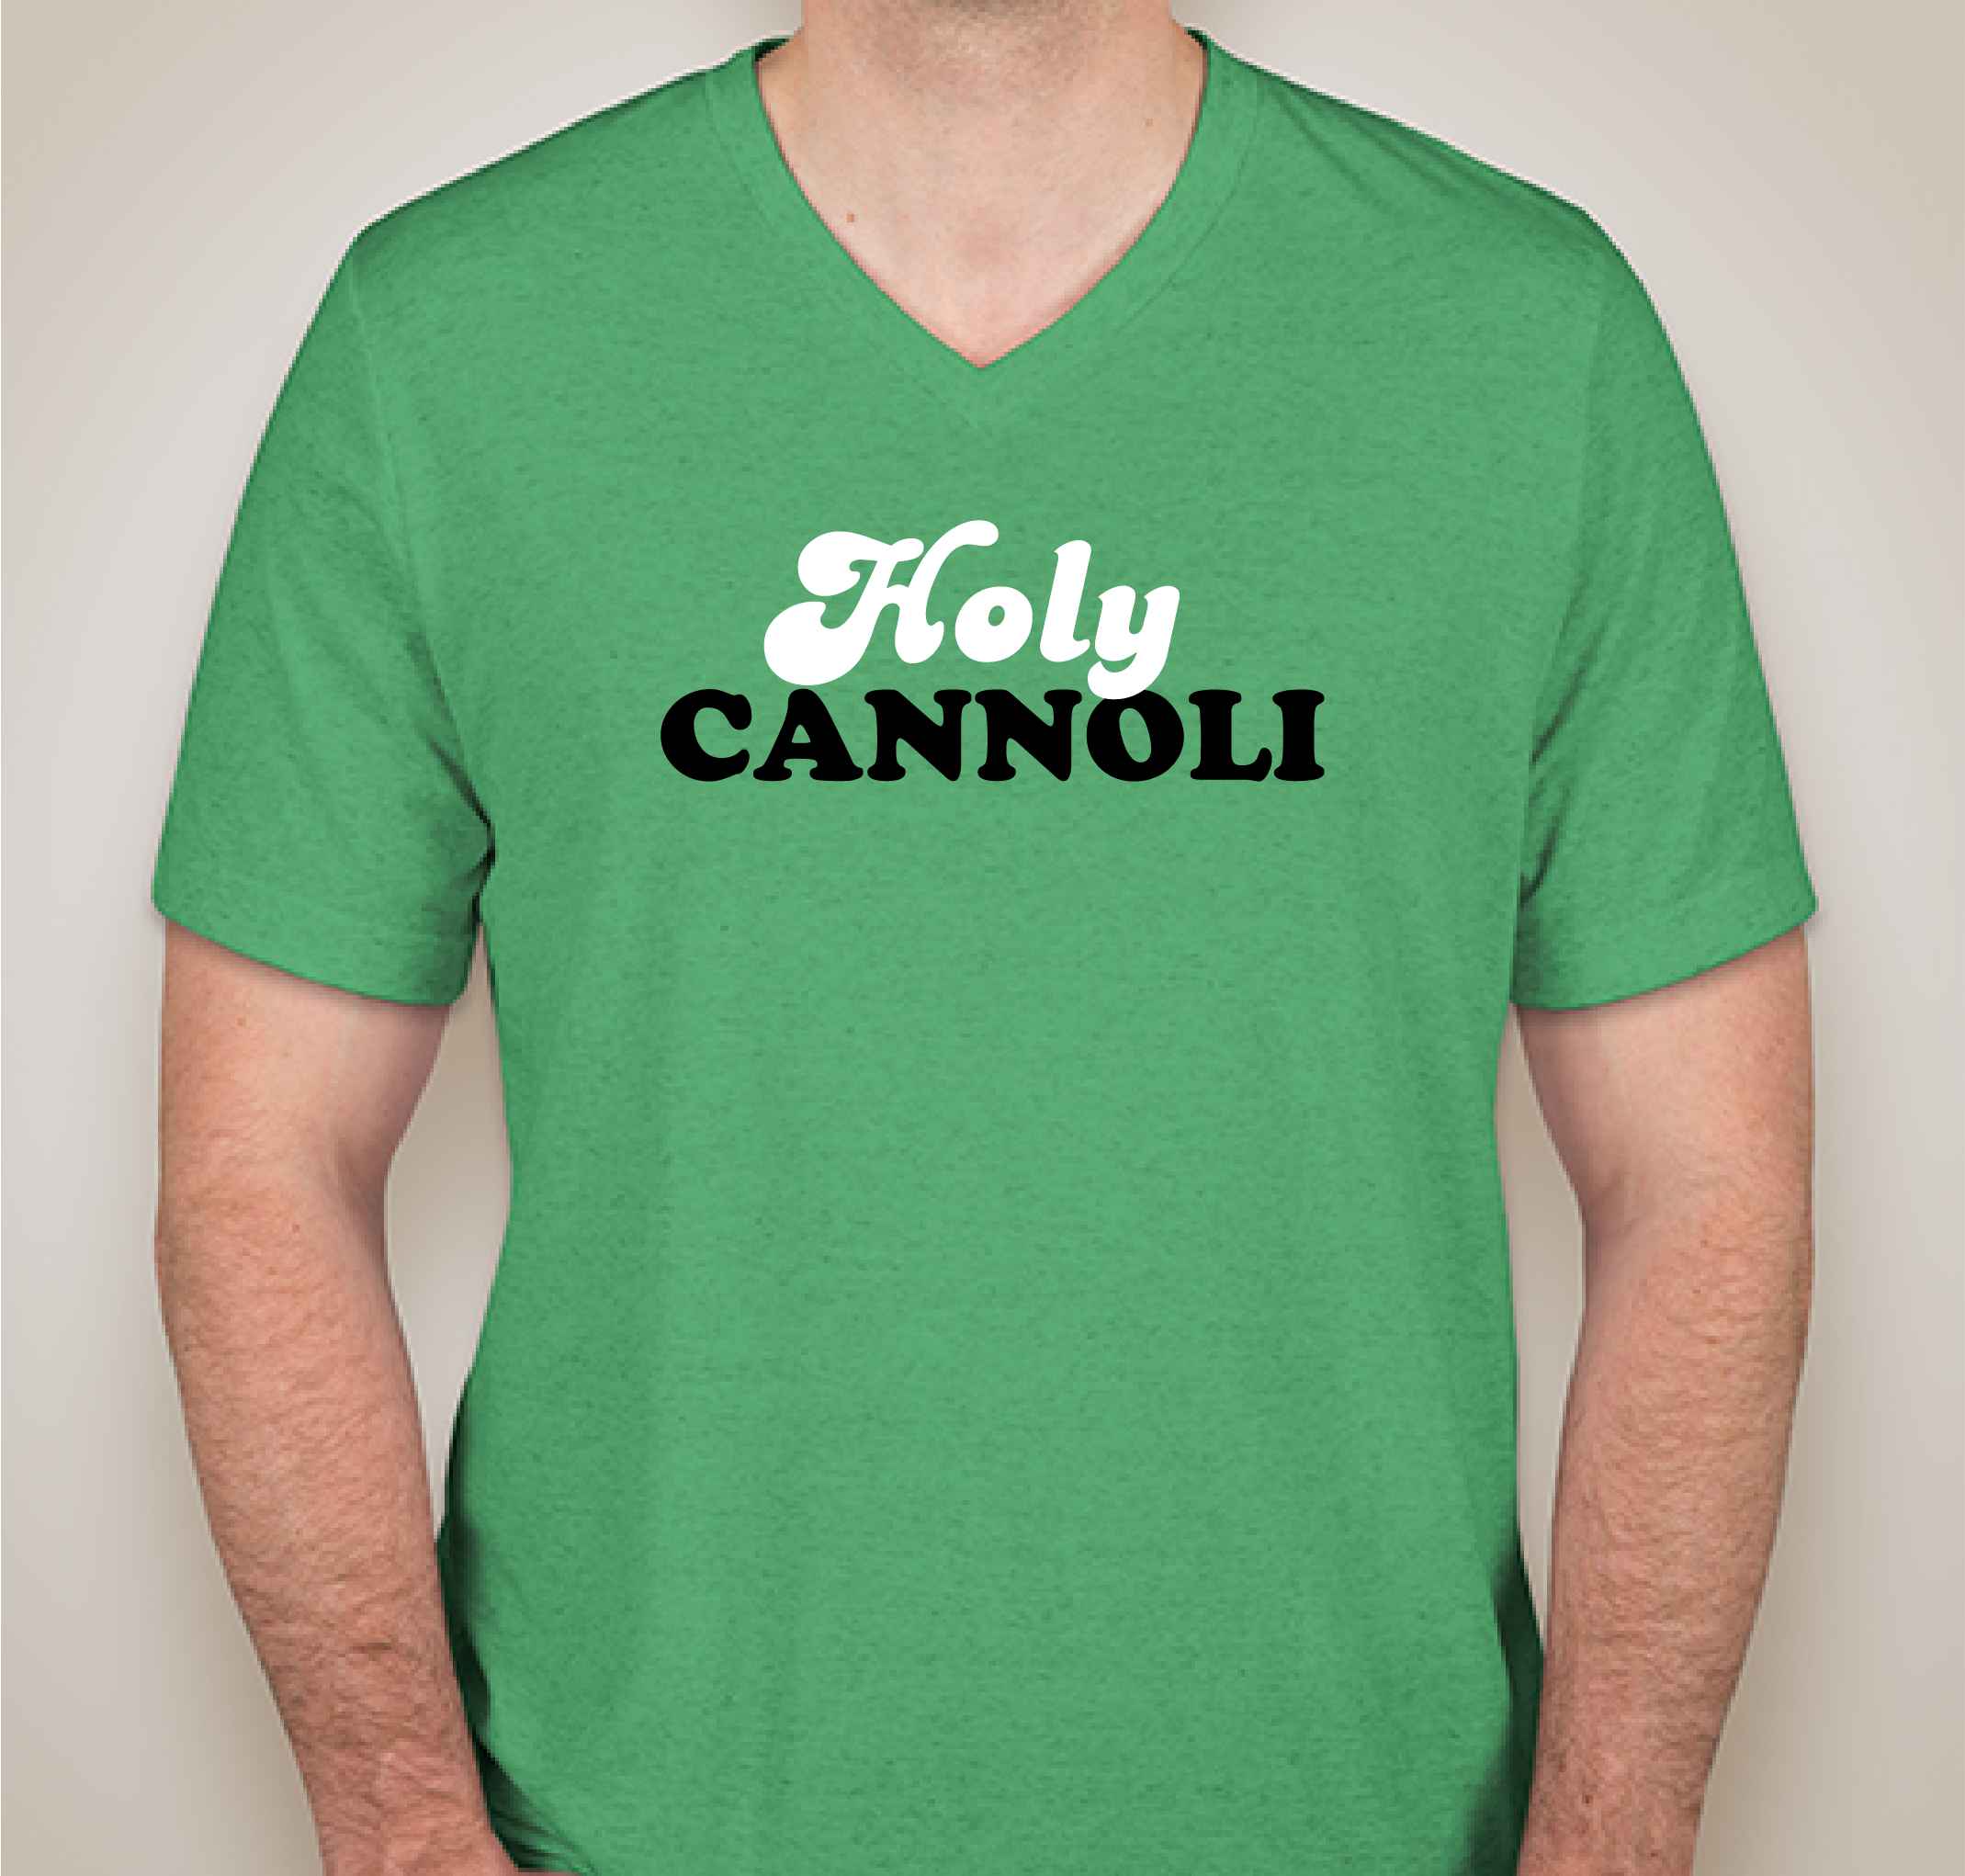 Holy Cannoli SHIRTS! Fundraiser - unisex shirt design - front